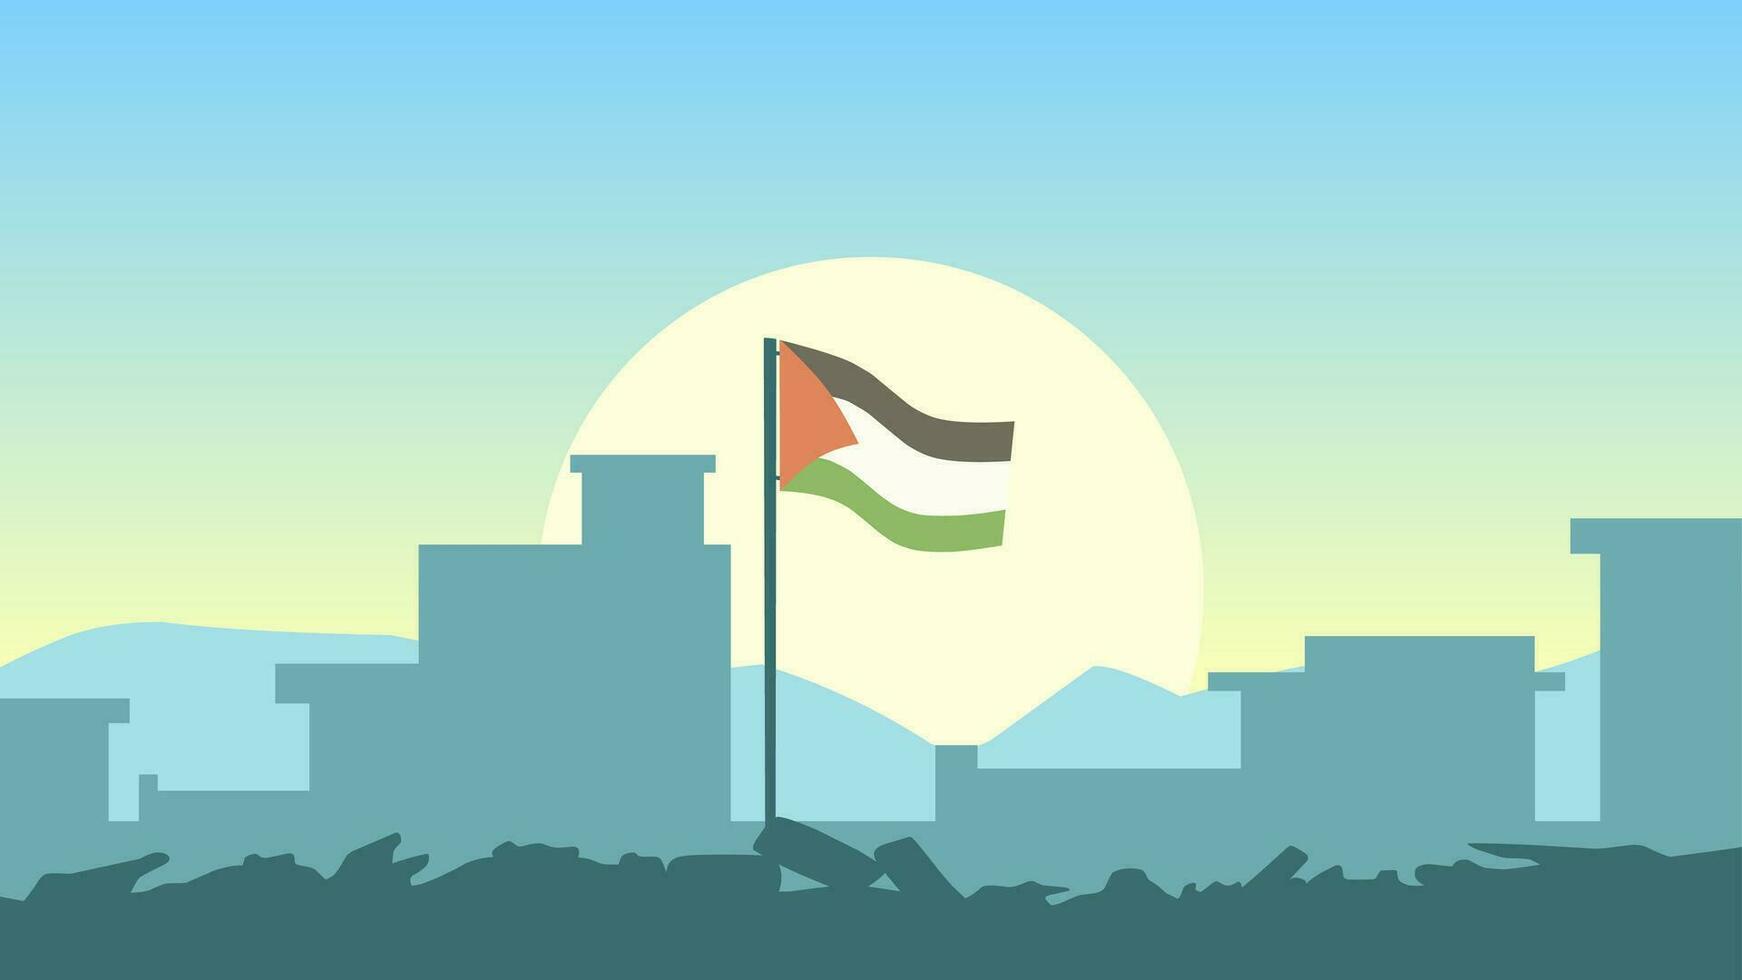 Palestina landschap vector illustratie. silhouet van vernietigd gebouwen Bij ochtend- met Palestina vlag. landschap illustratie van vernietigd stad voor achtergrond of behang